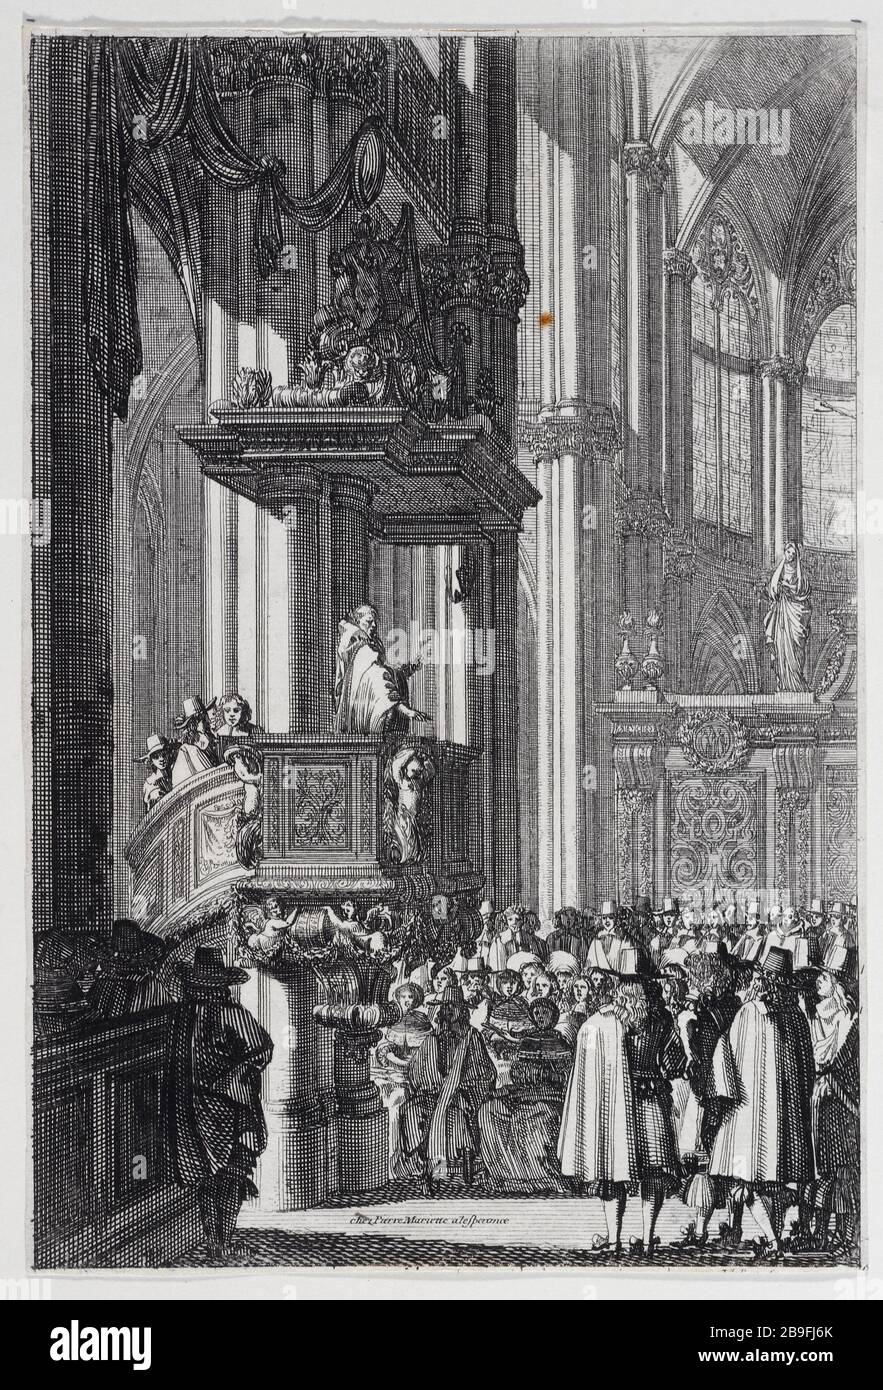 PREDICA IN UNA CHIESA Jean Lepautre (1618-1682). 'Prêche dans une église'. Gravure. Parigi, musée Carnavalet. Foto Stock